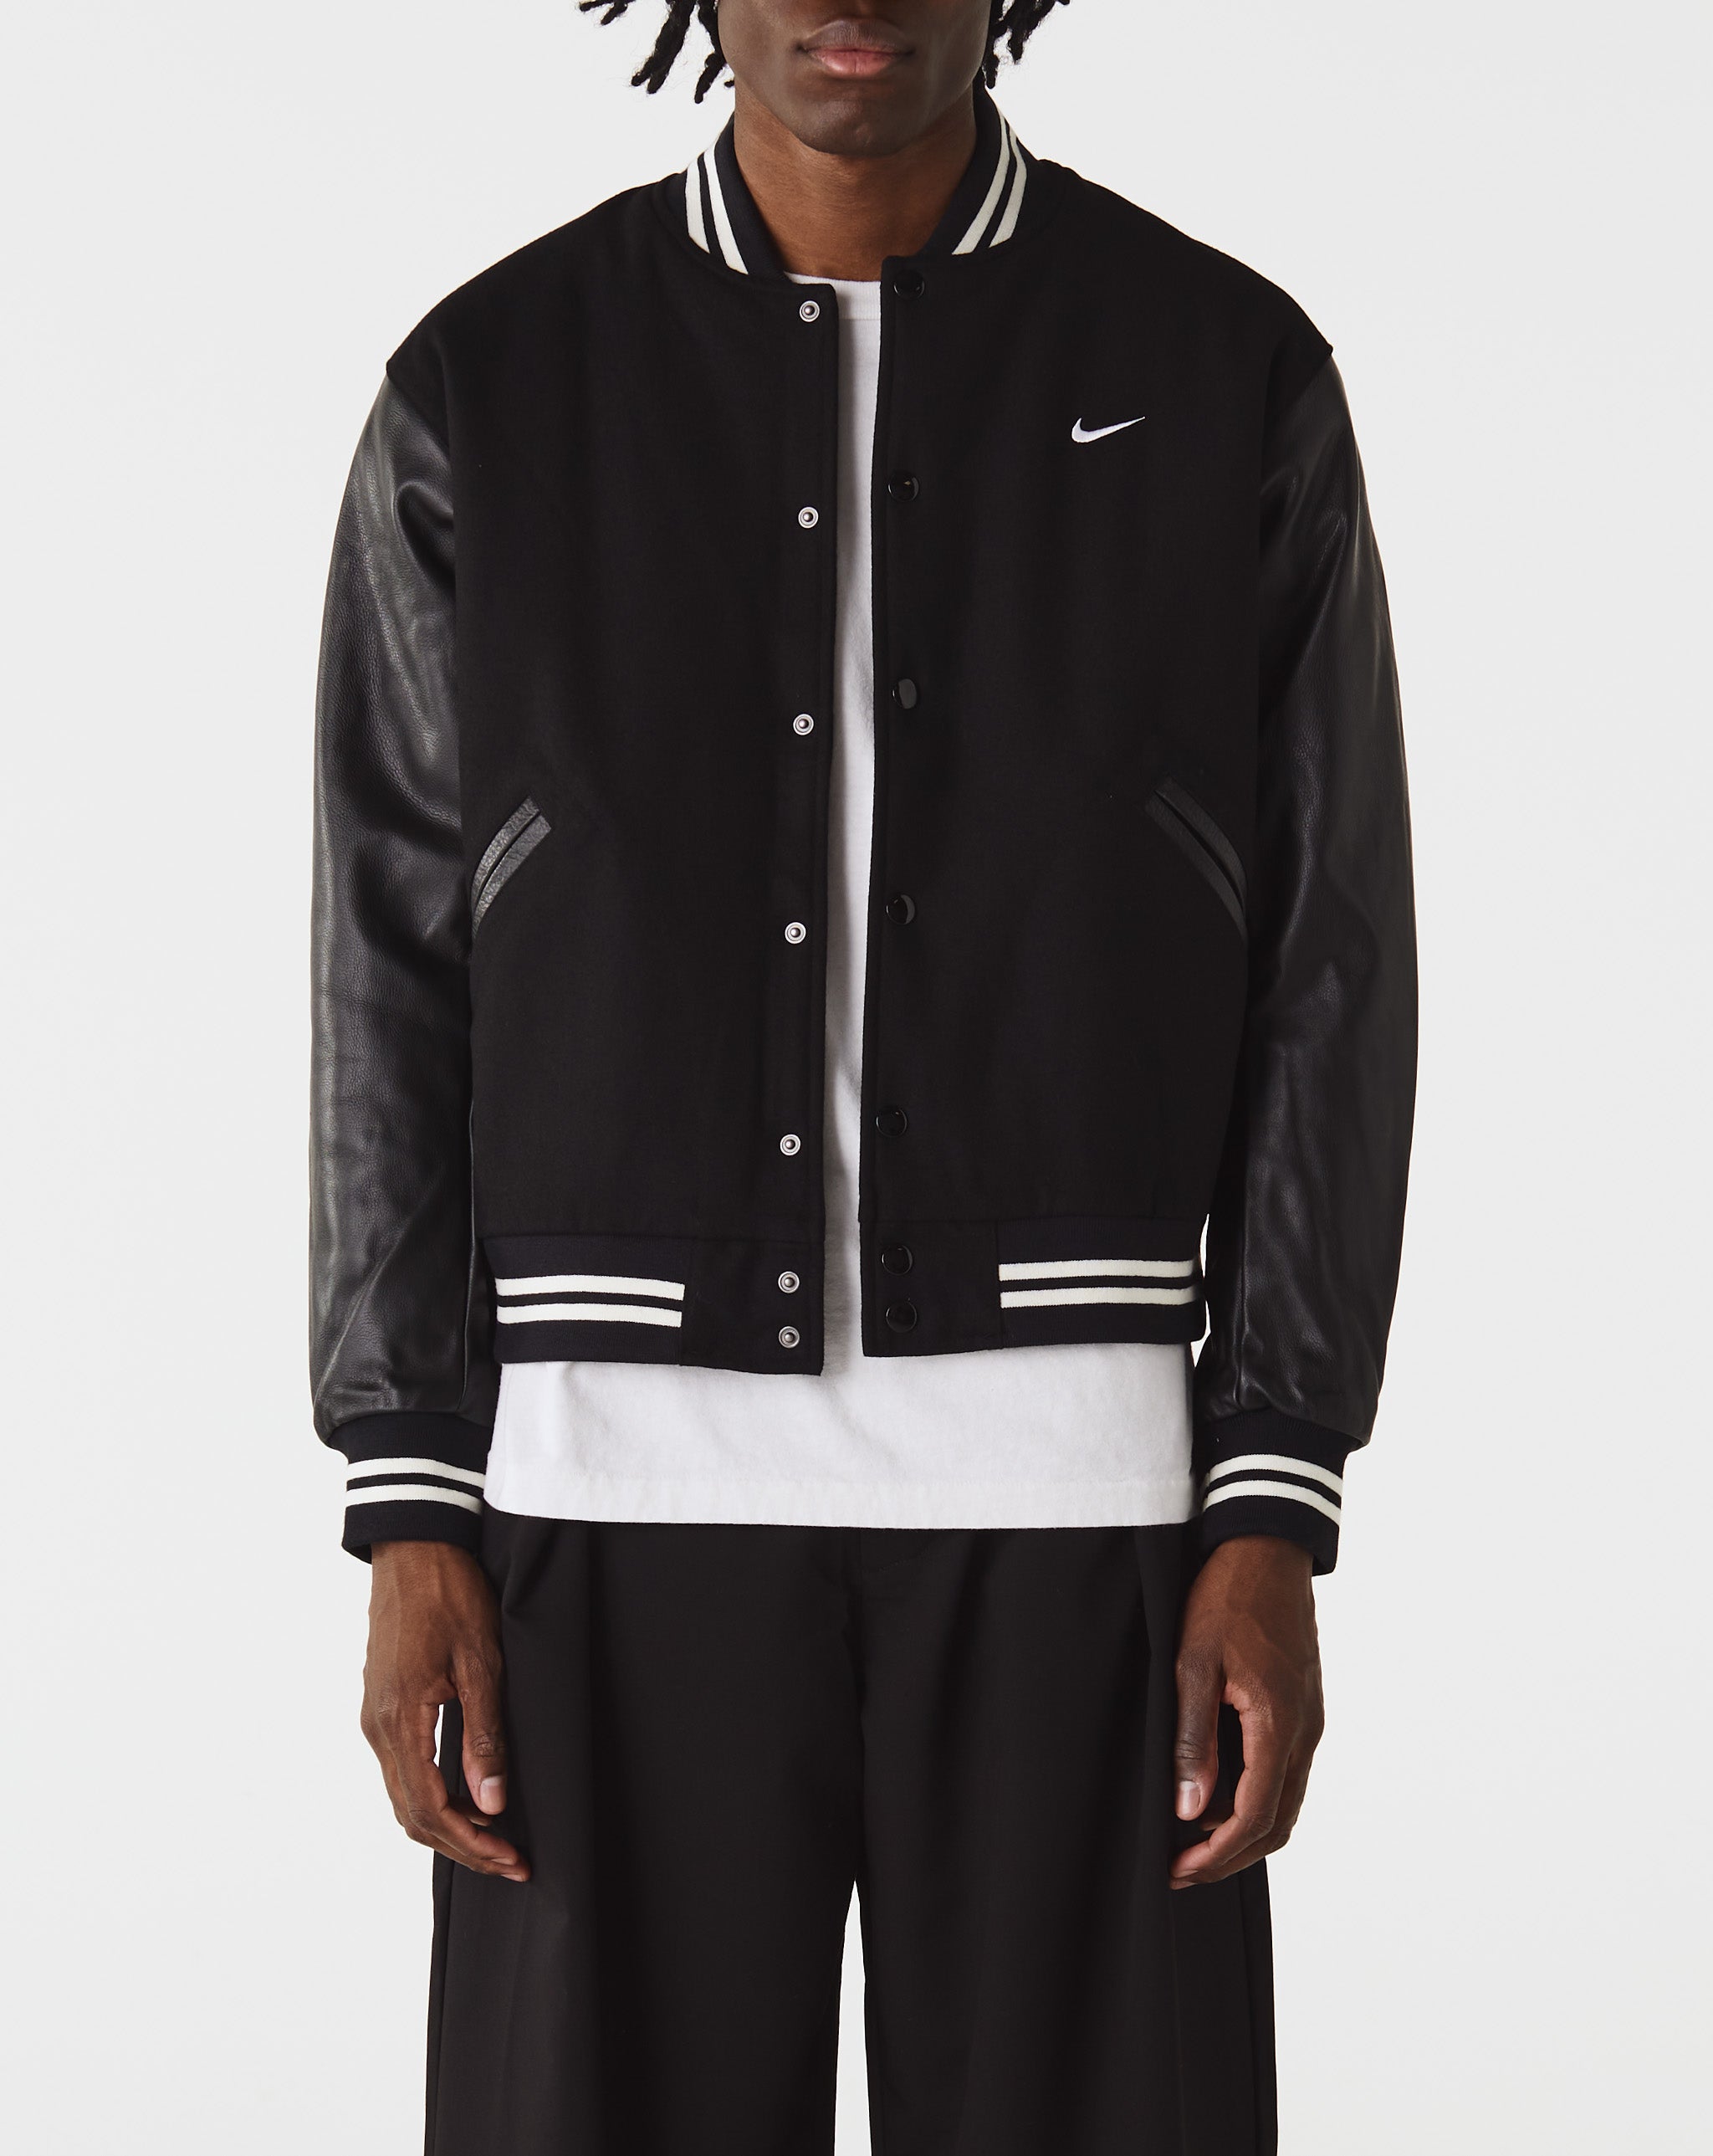 Nike Nike Authentics Varsity Jacket  - XHIBITION